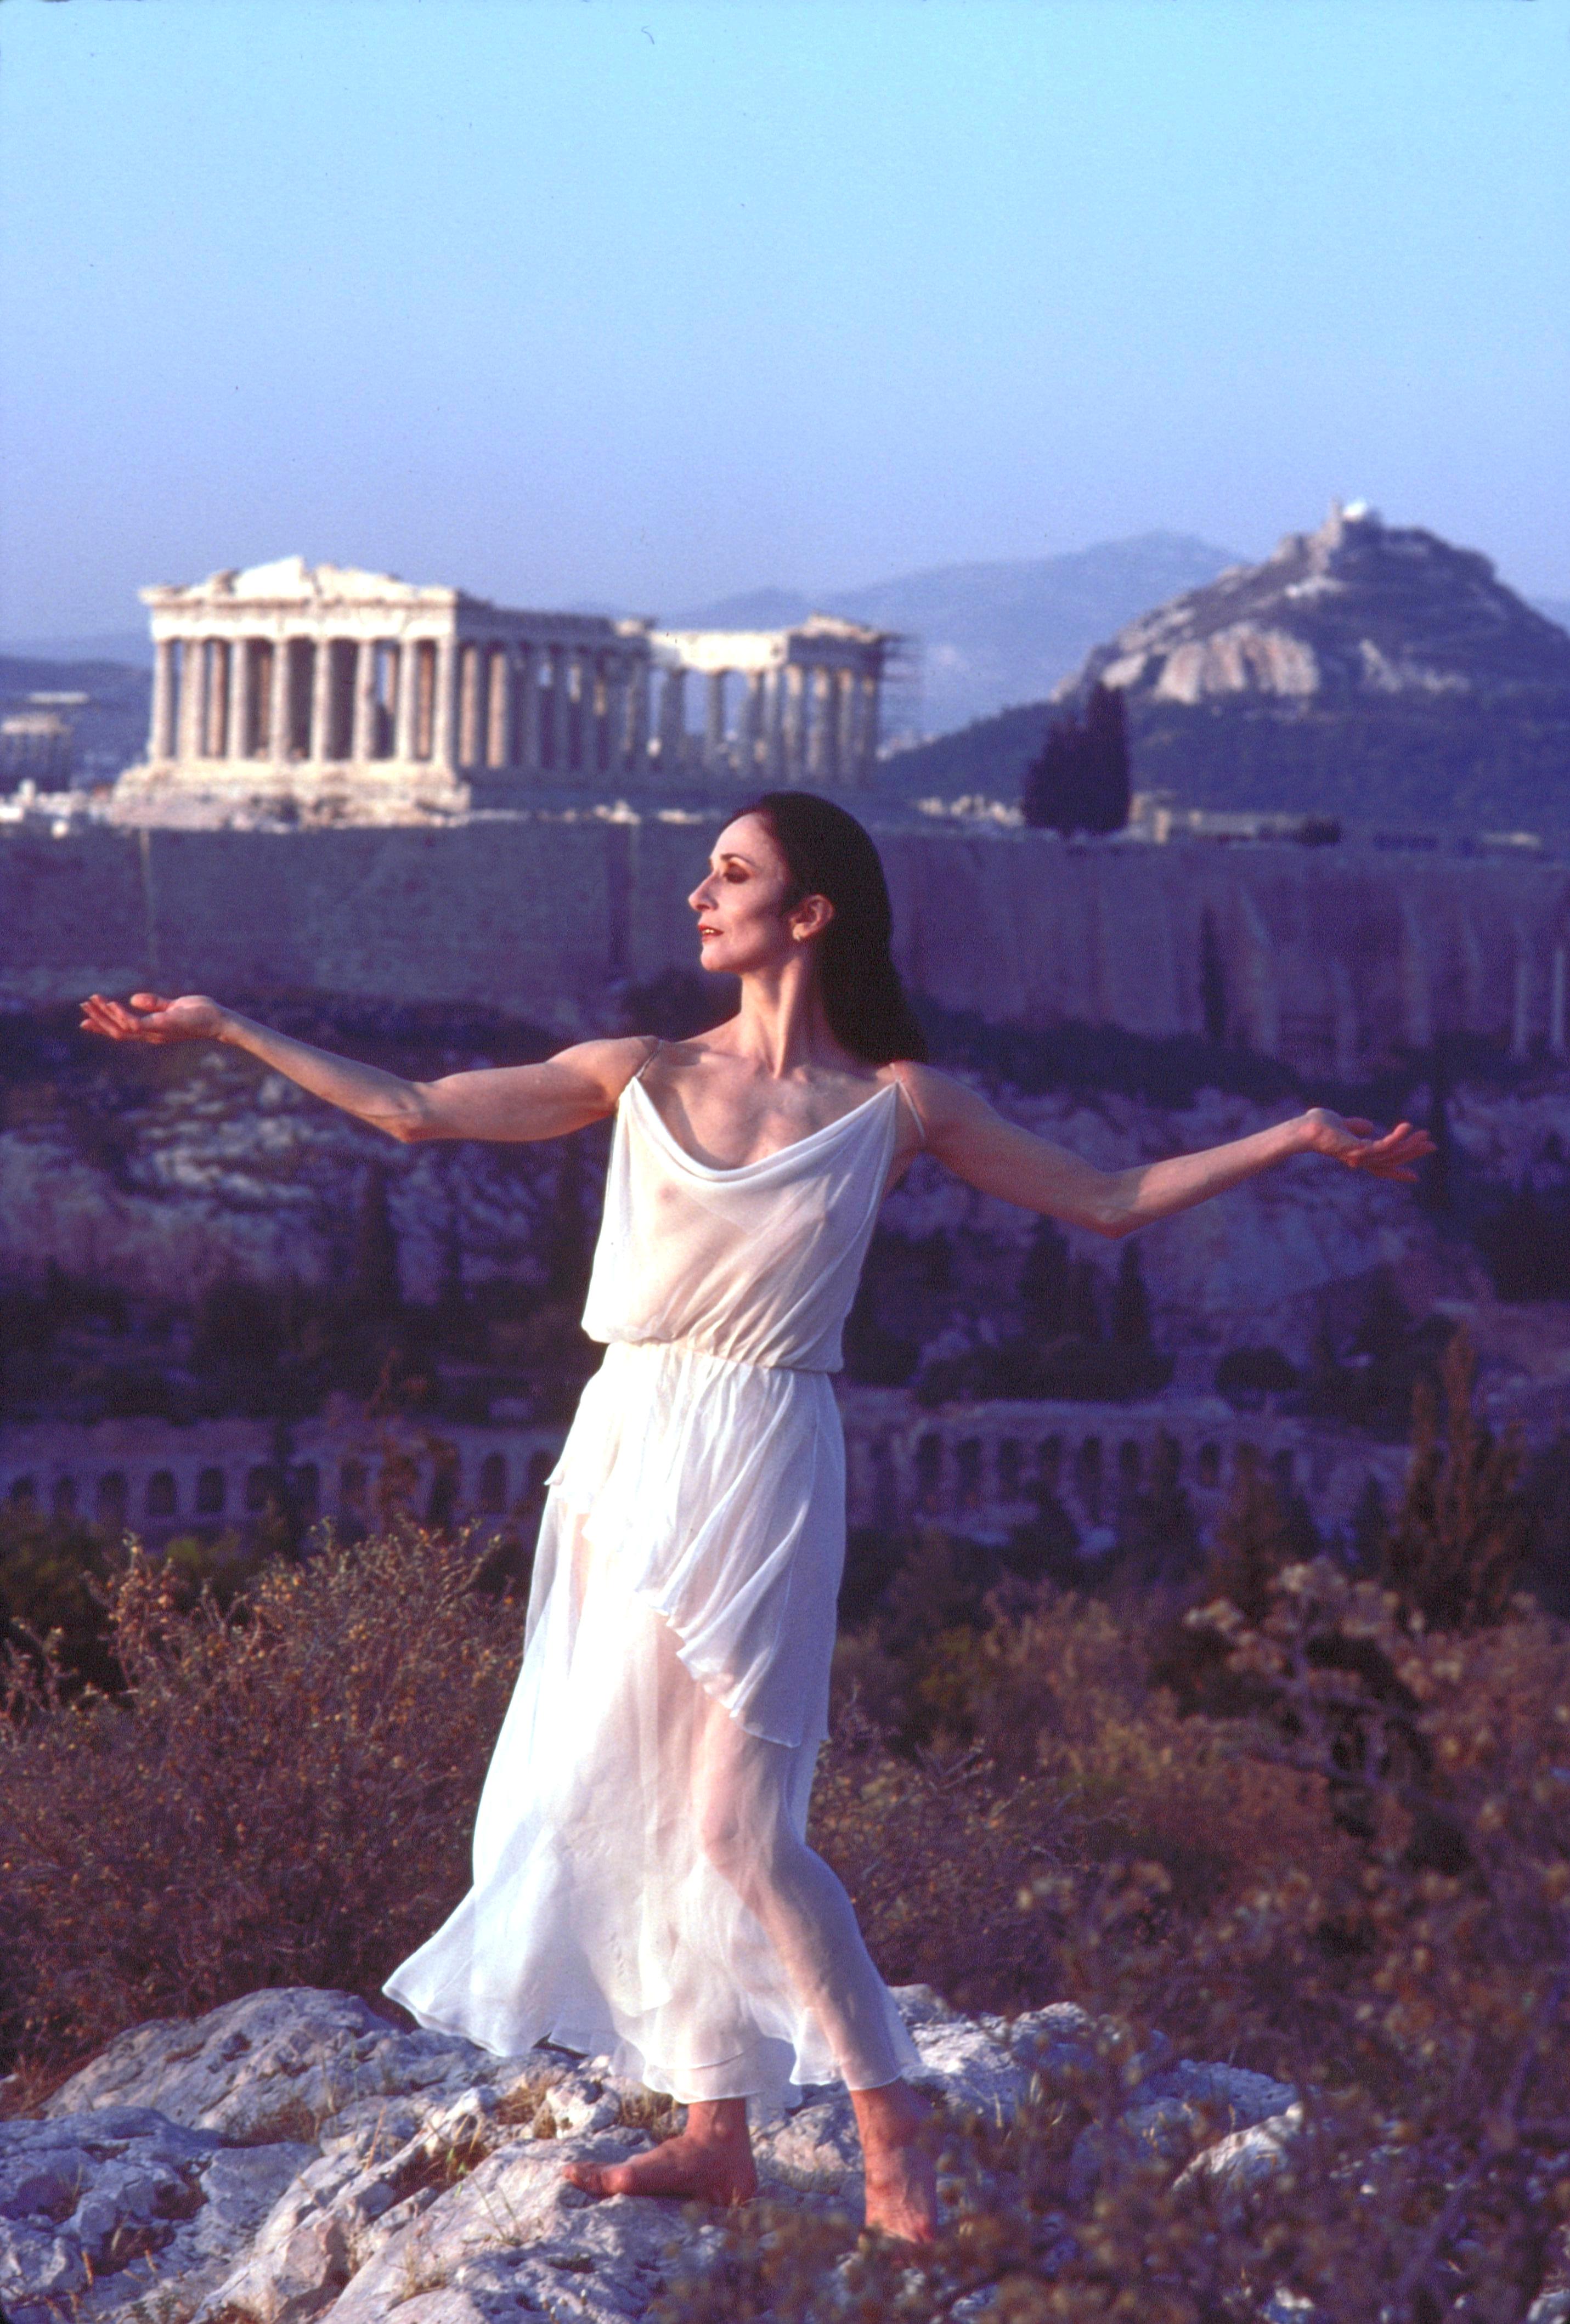 Color Photograph Jack Mitchell - Photographie d'exposition de la danseuse de ballet Bejart Marcia Haydee en Grèce, 43,18 x 55,9 cm